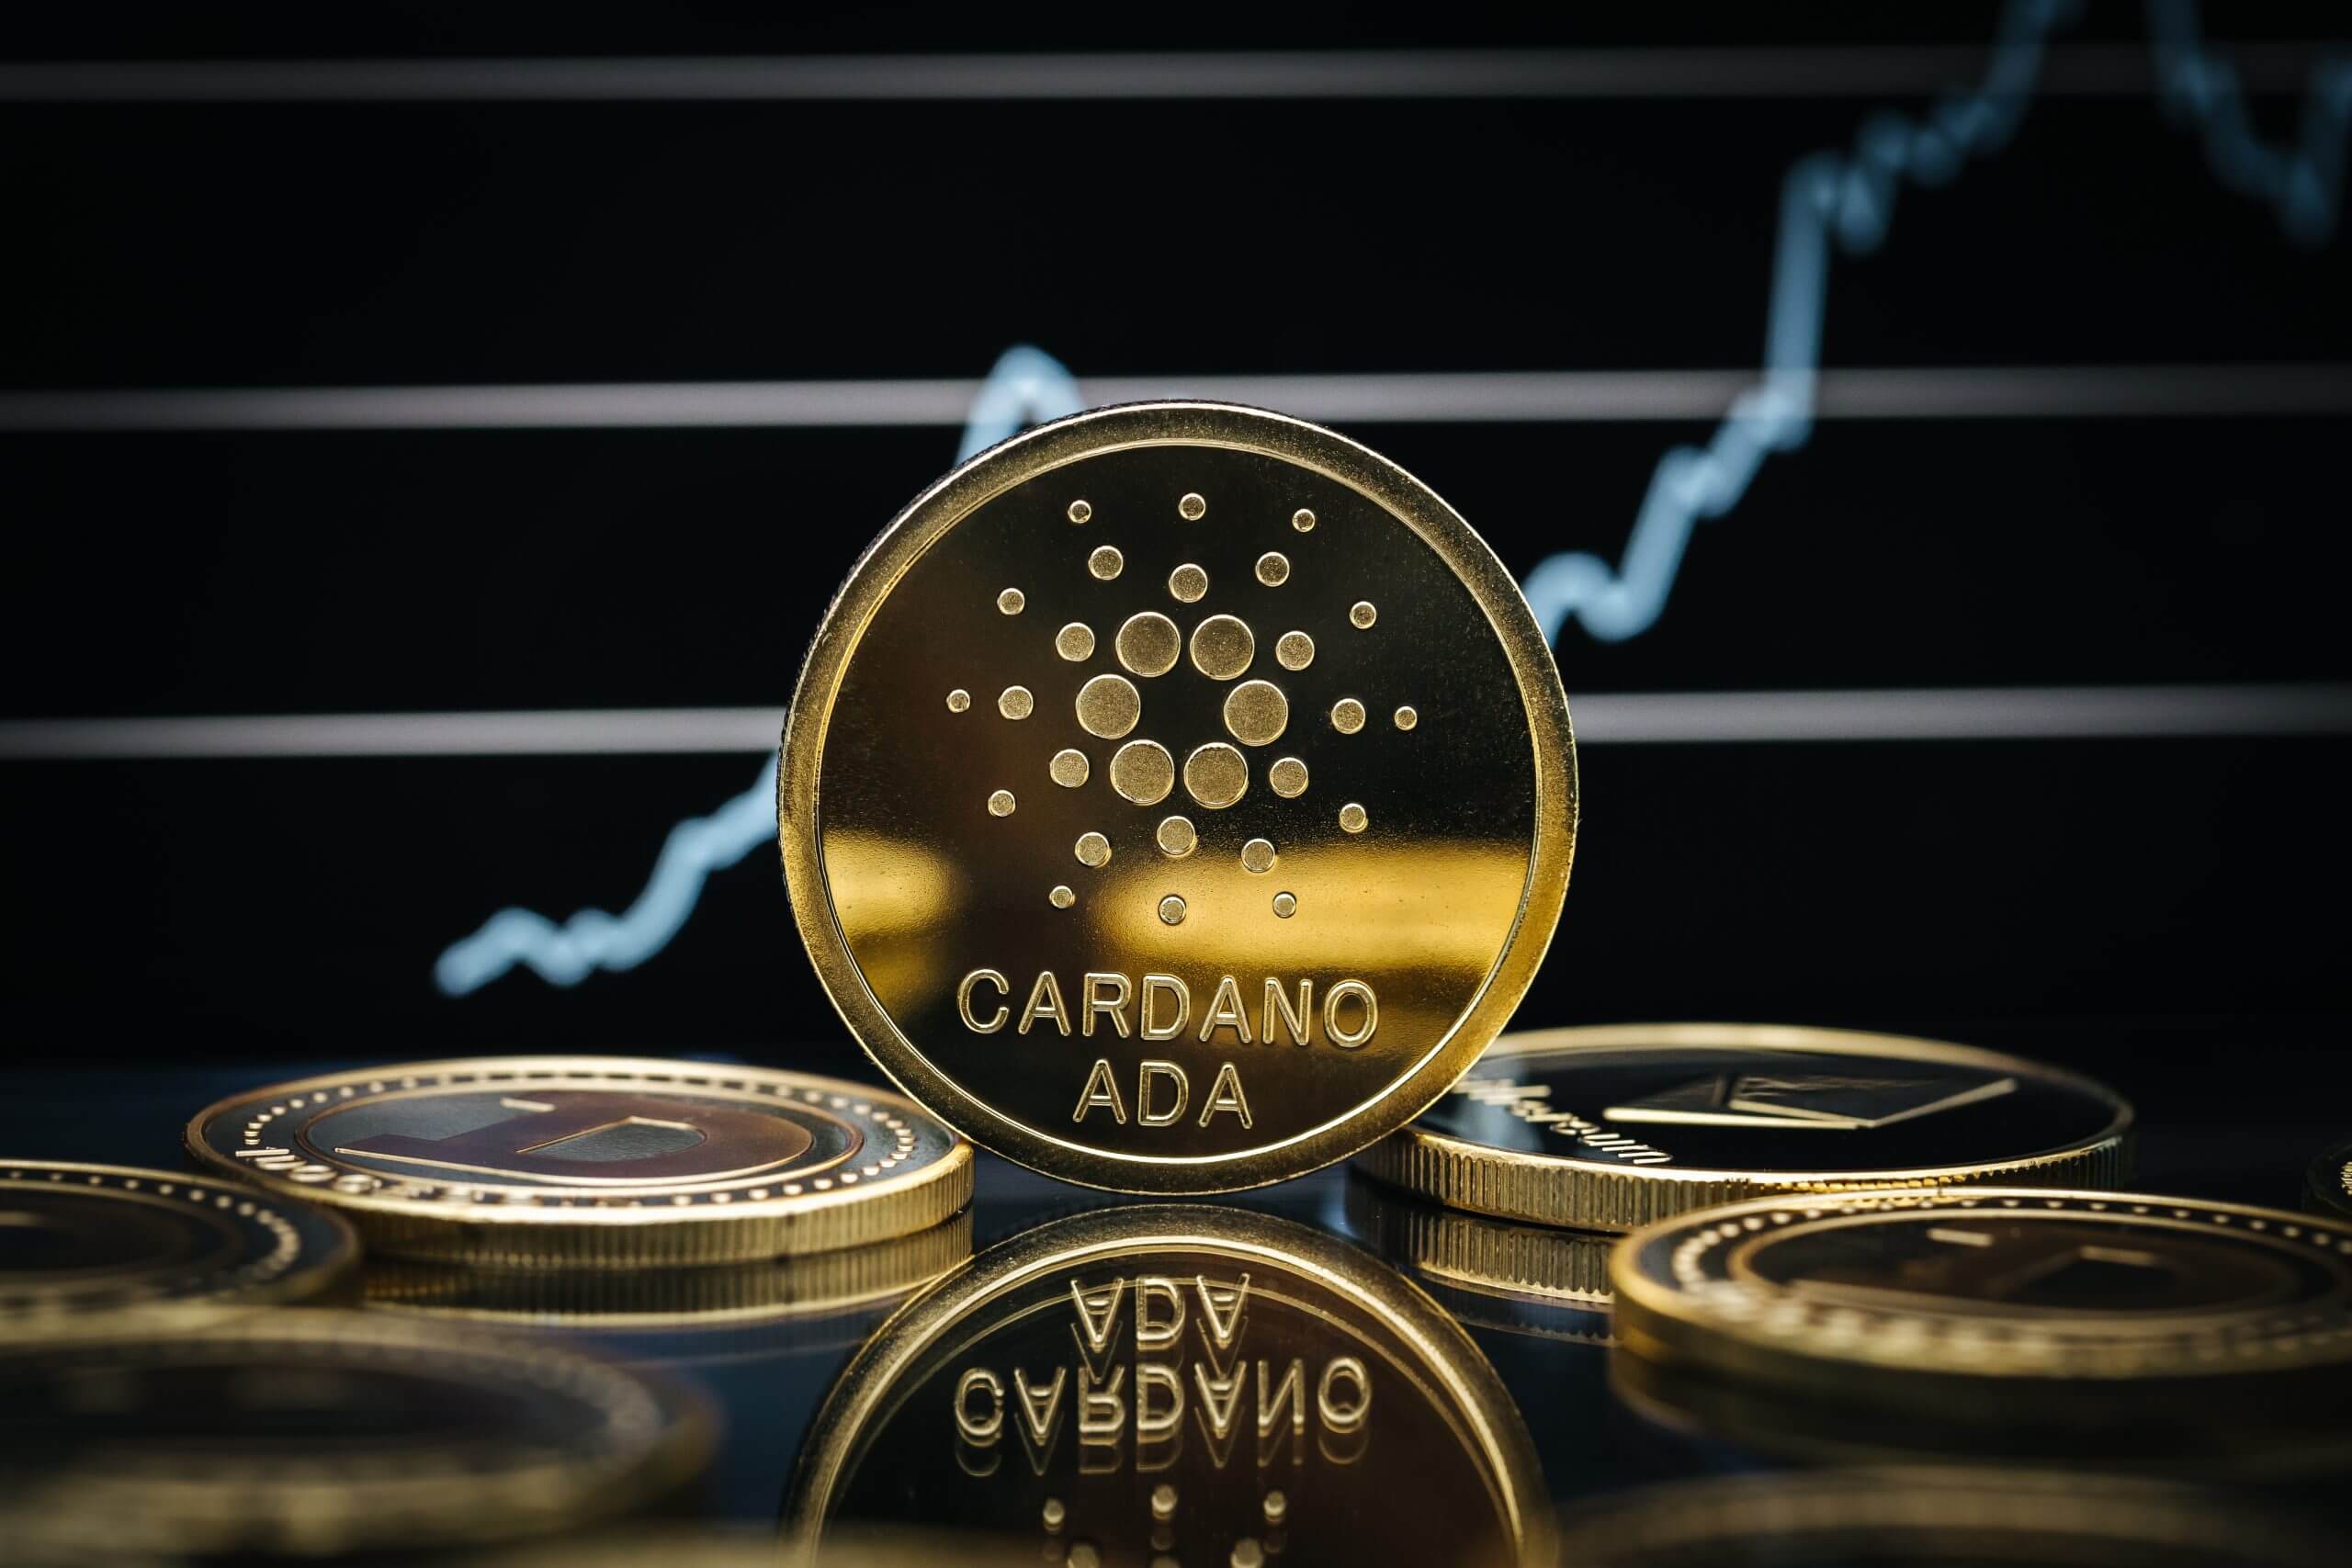 7. Cardano (ADA) - $20 Billion